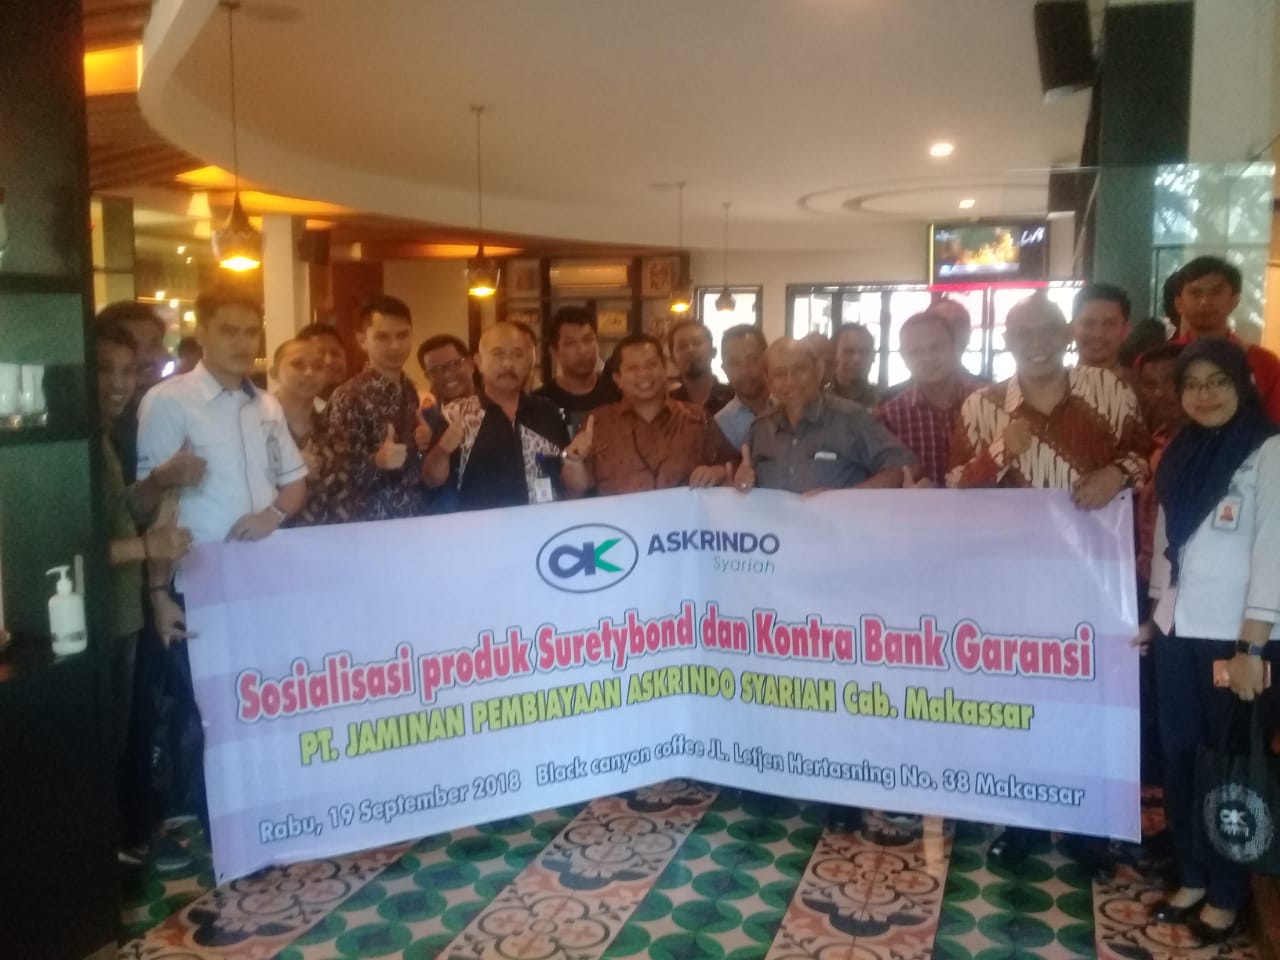 Sosialisasi Produk Surety Bond & Kontra Bank Garansi di Makassar